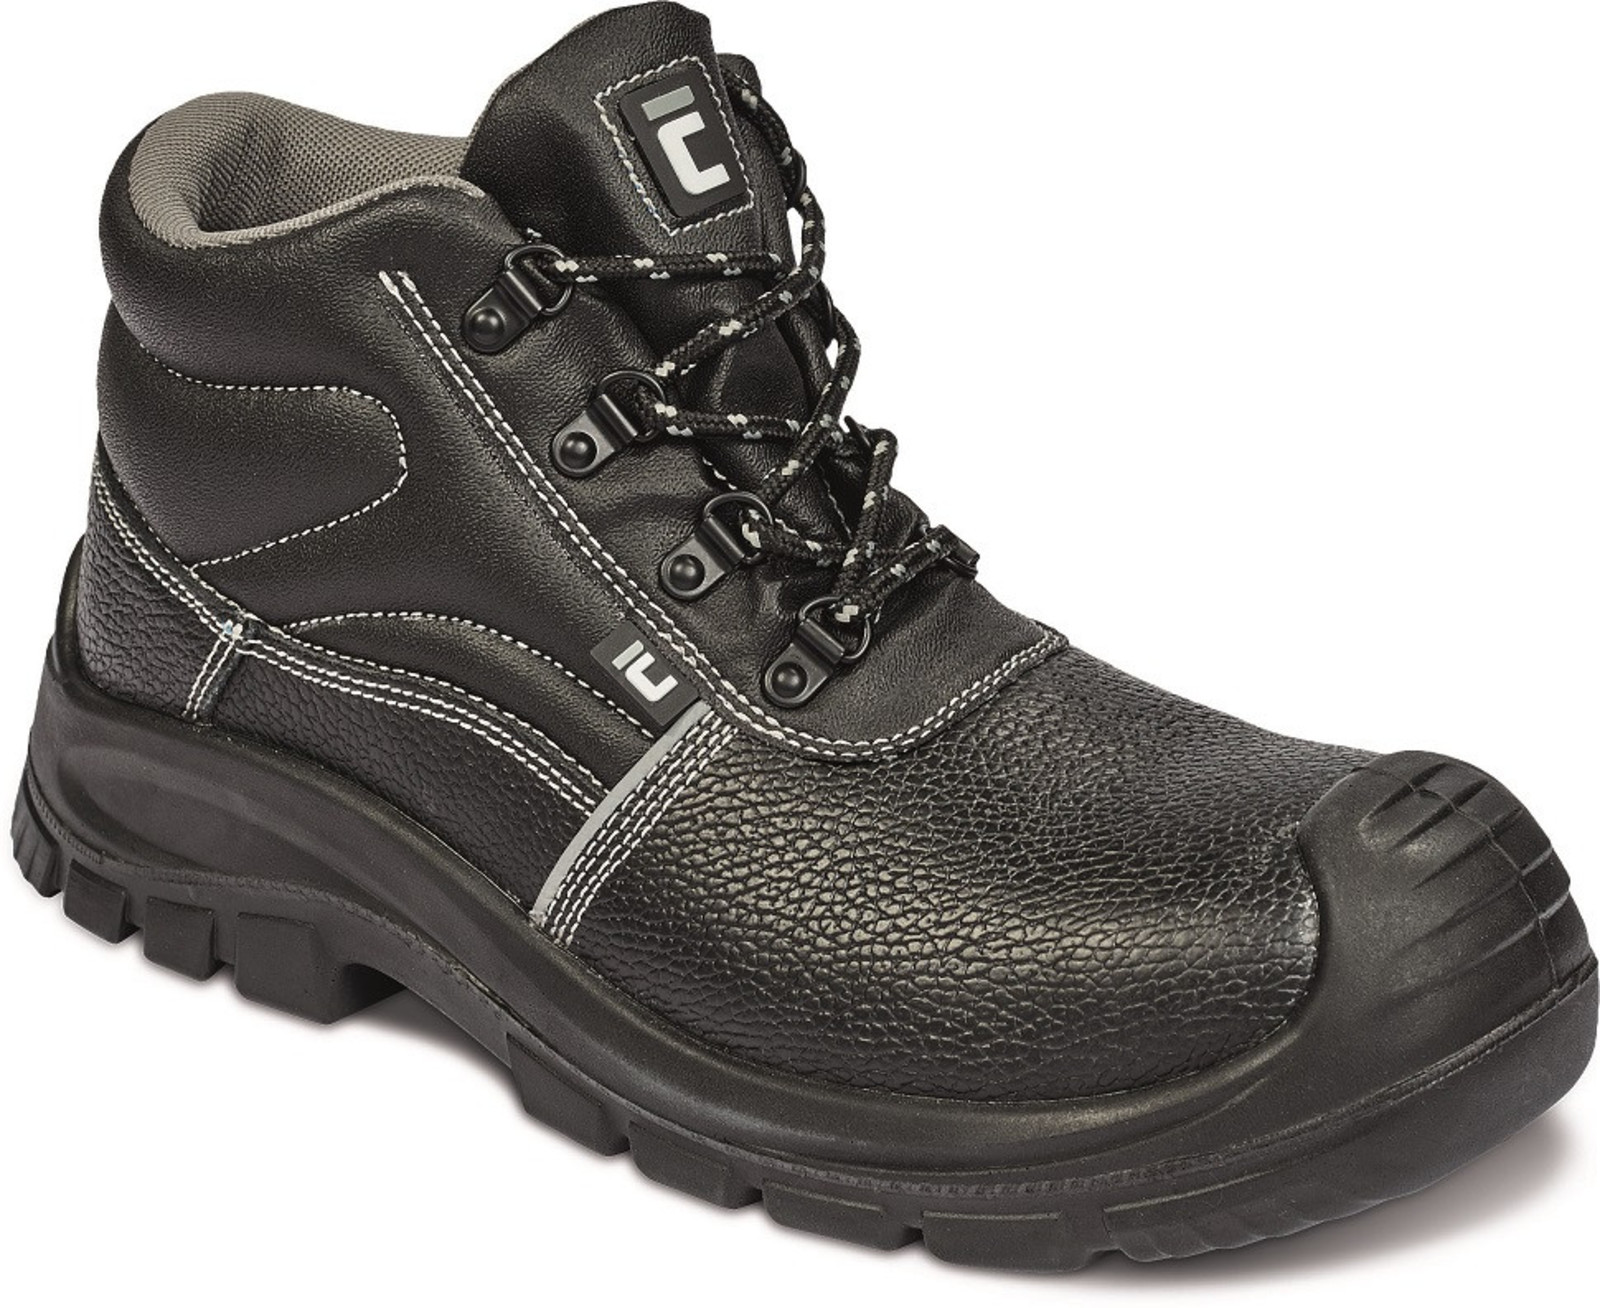 Bezpečnostná obuv Raven XT S3 Metal Free - veľkosť: 36, farba: čierna